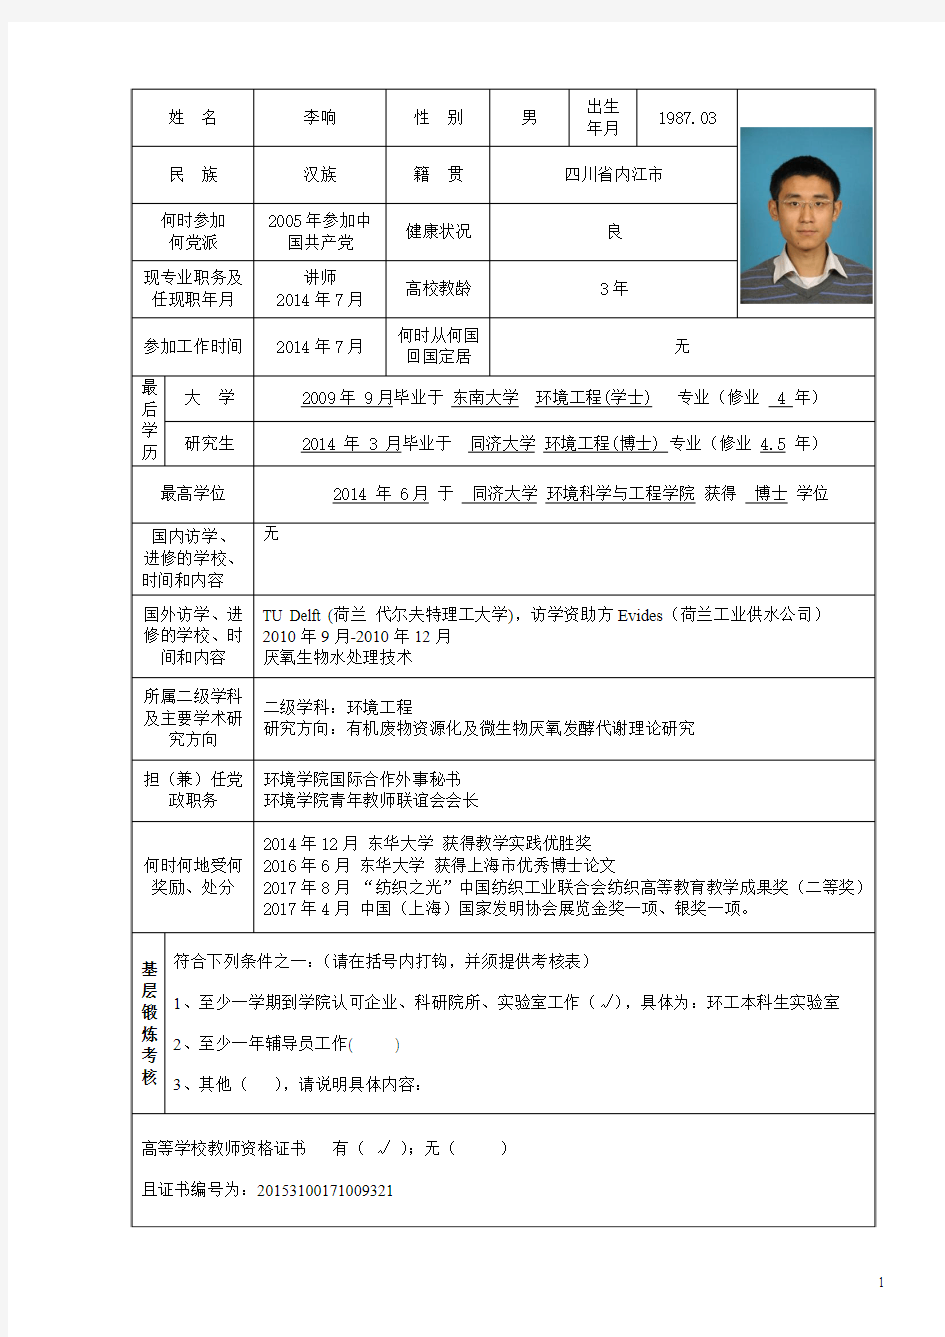 东华大学高级专业技术职务申报表